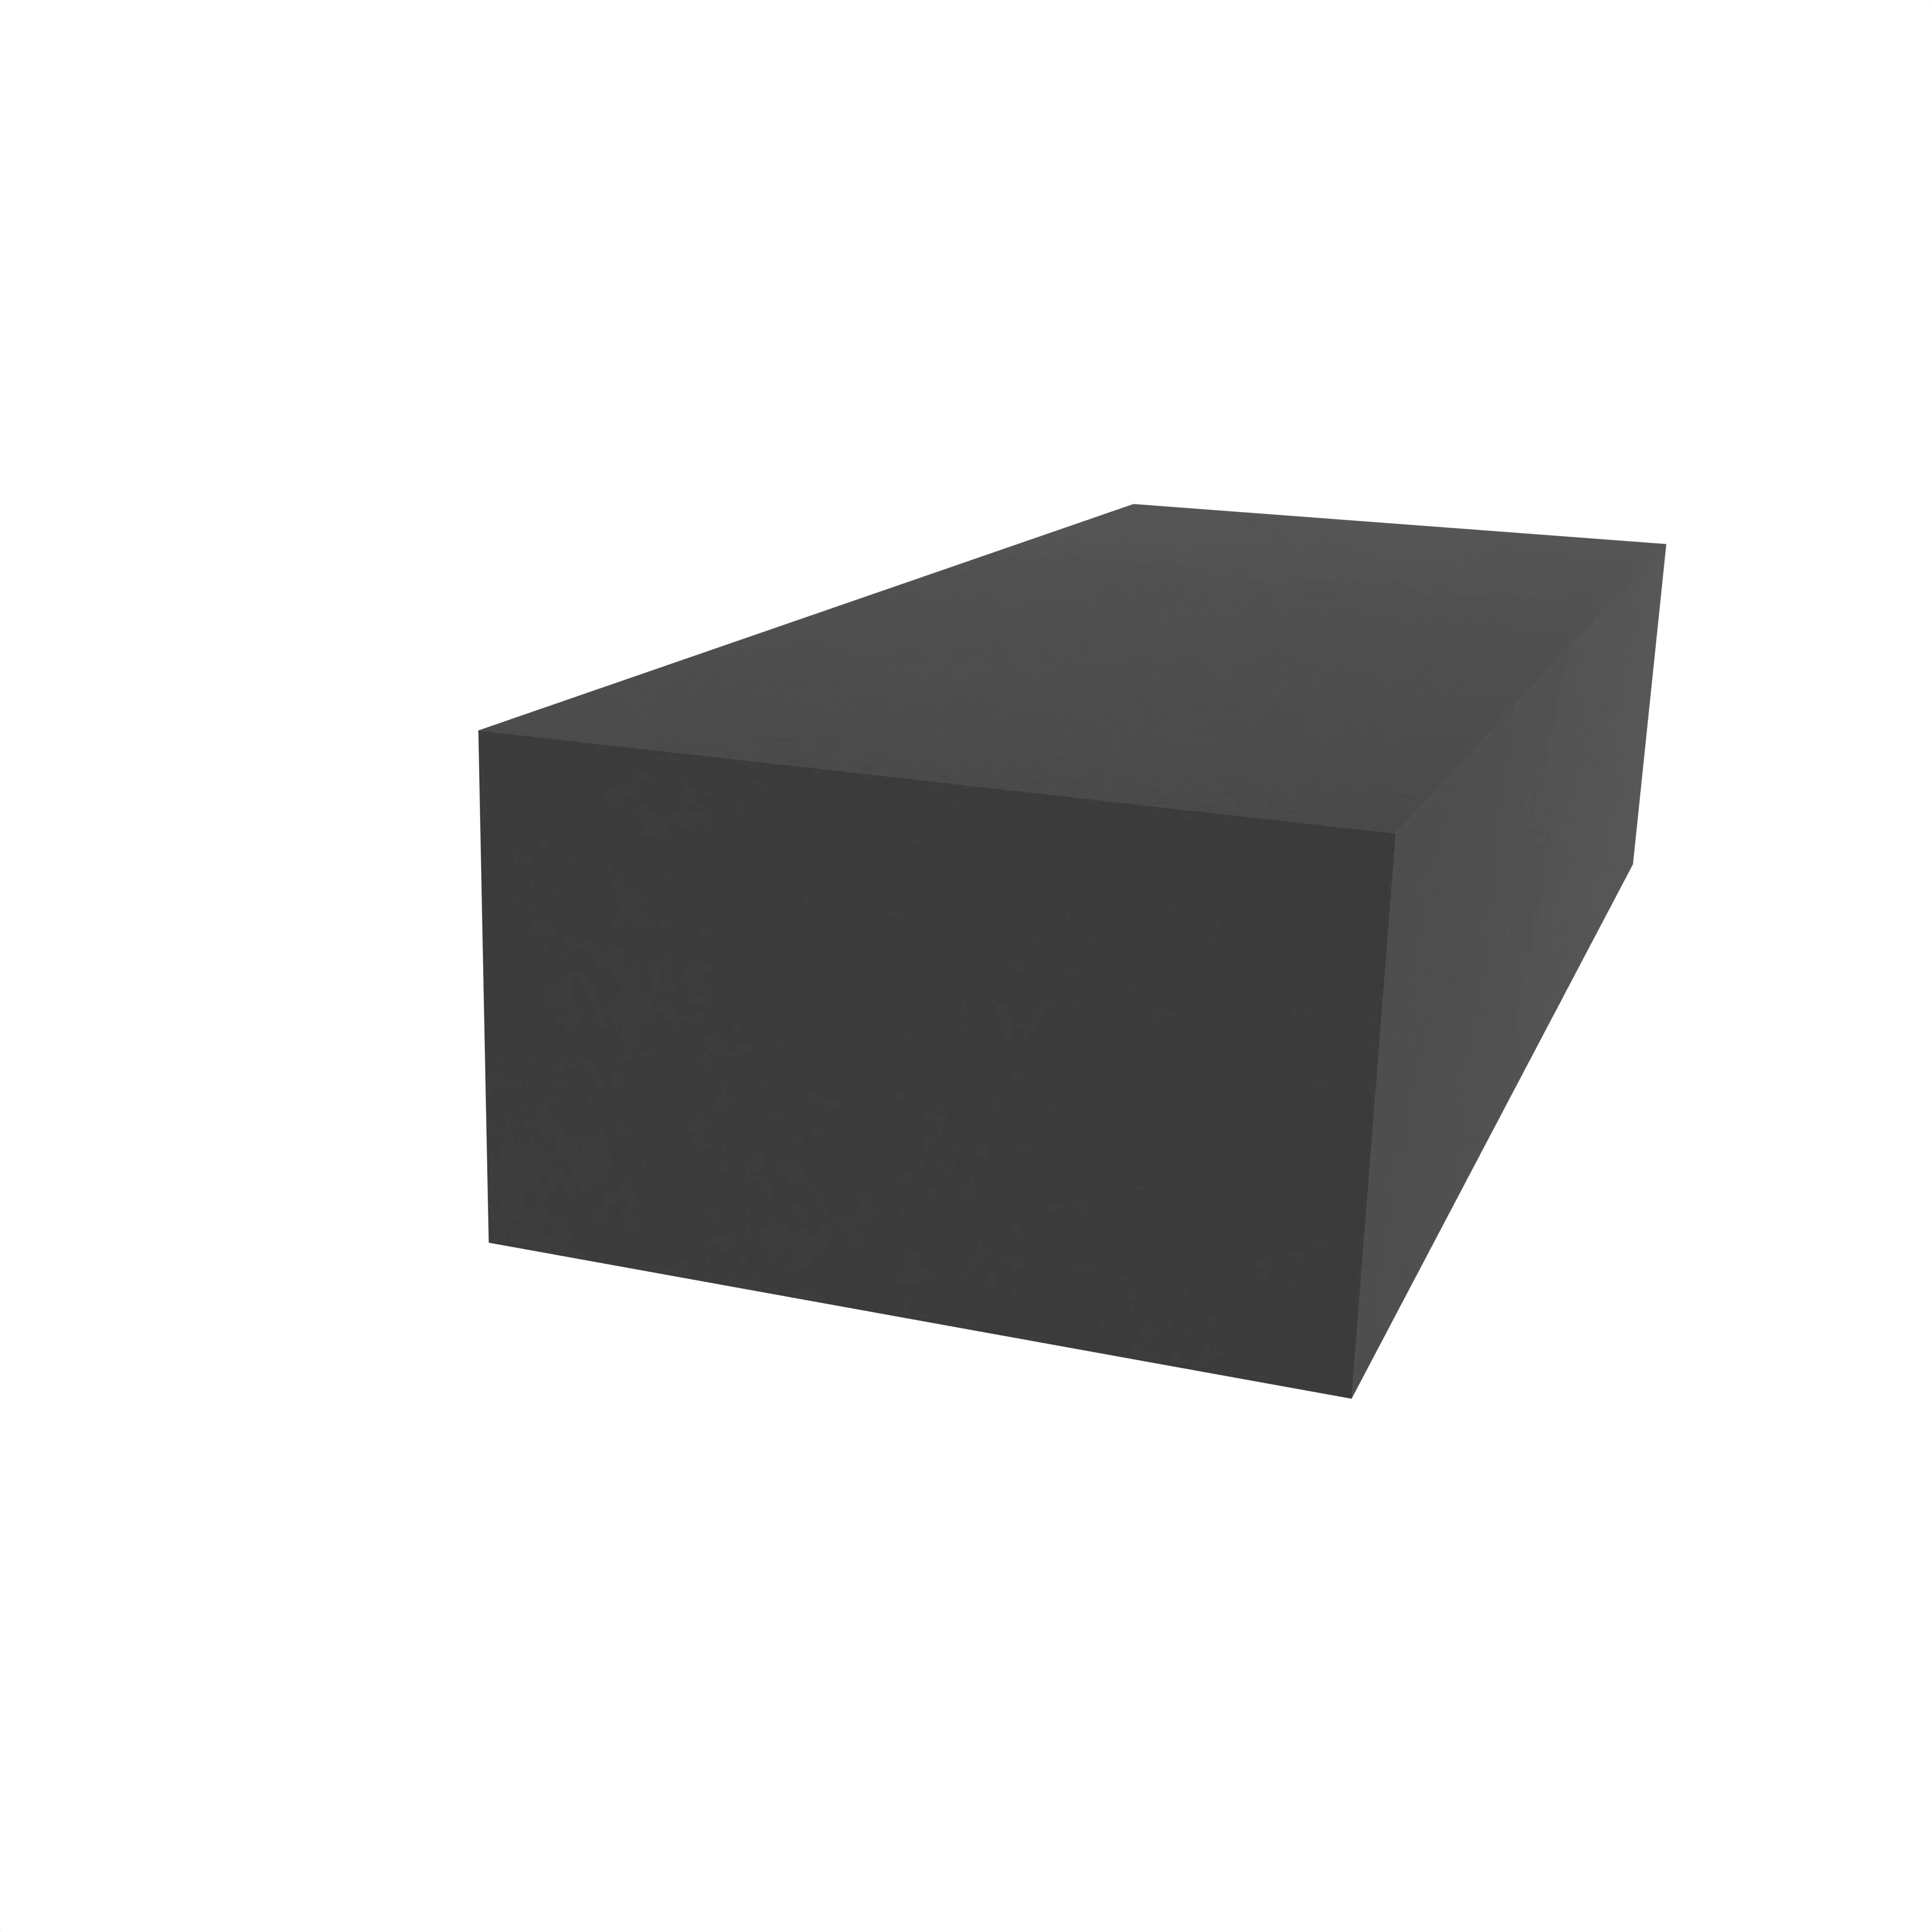 Moosgummidichtung vierkant | 5 mm Breite | Farbe: schwarz